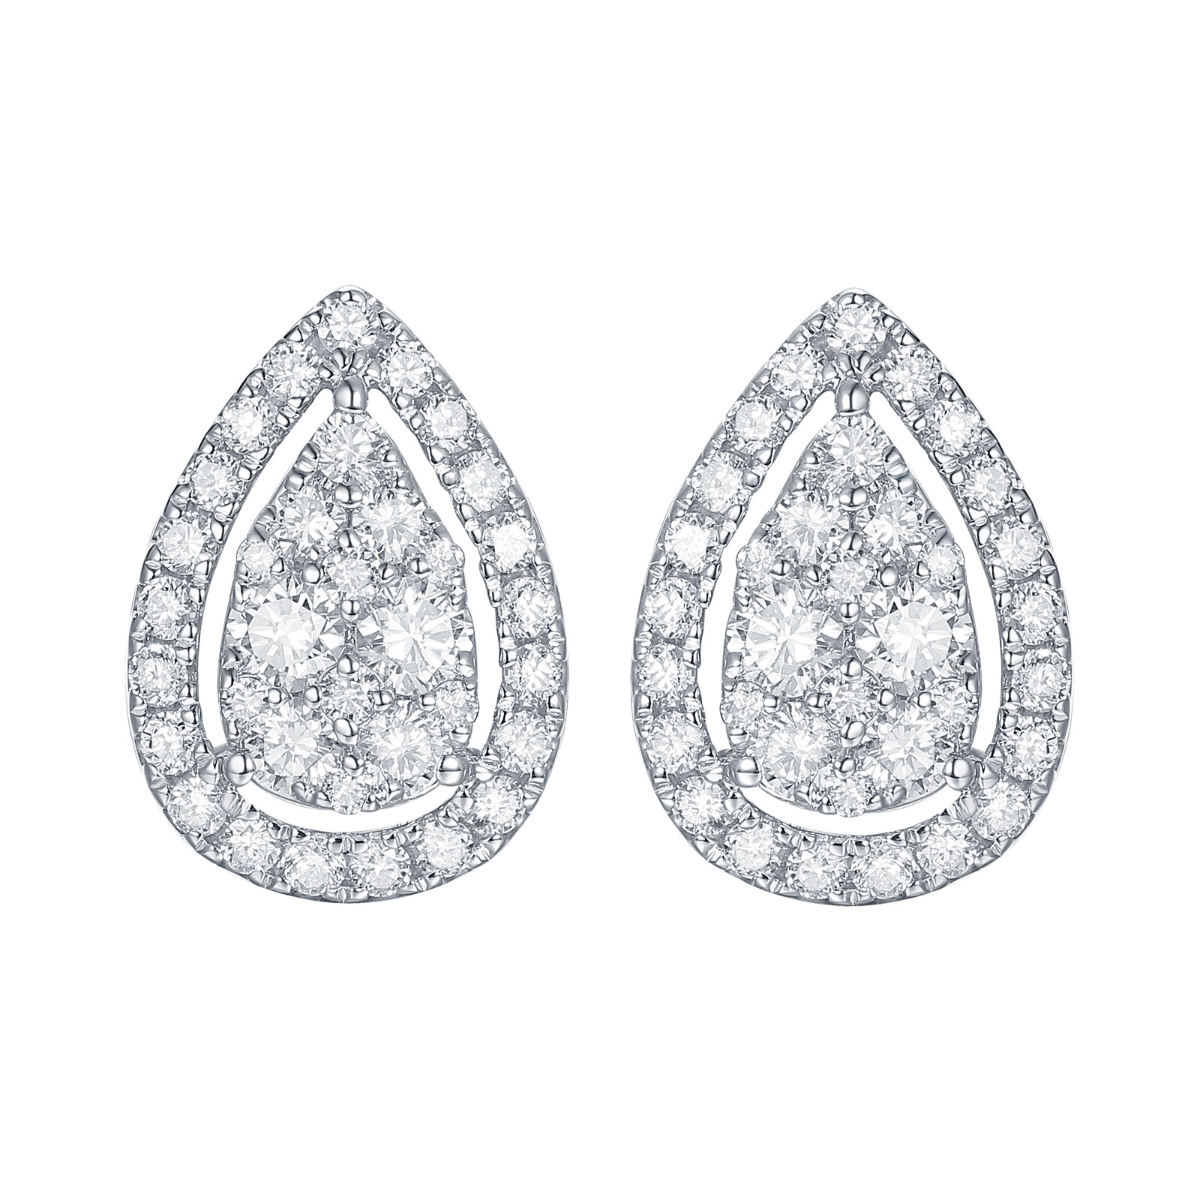 E35513WHT – 18K White Gold Diamond Earring, 0.73 TCW